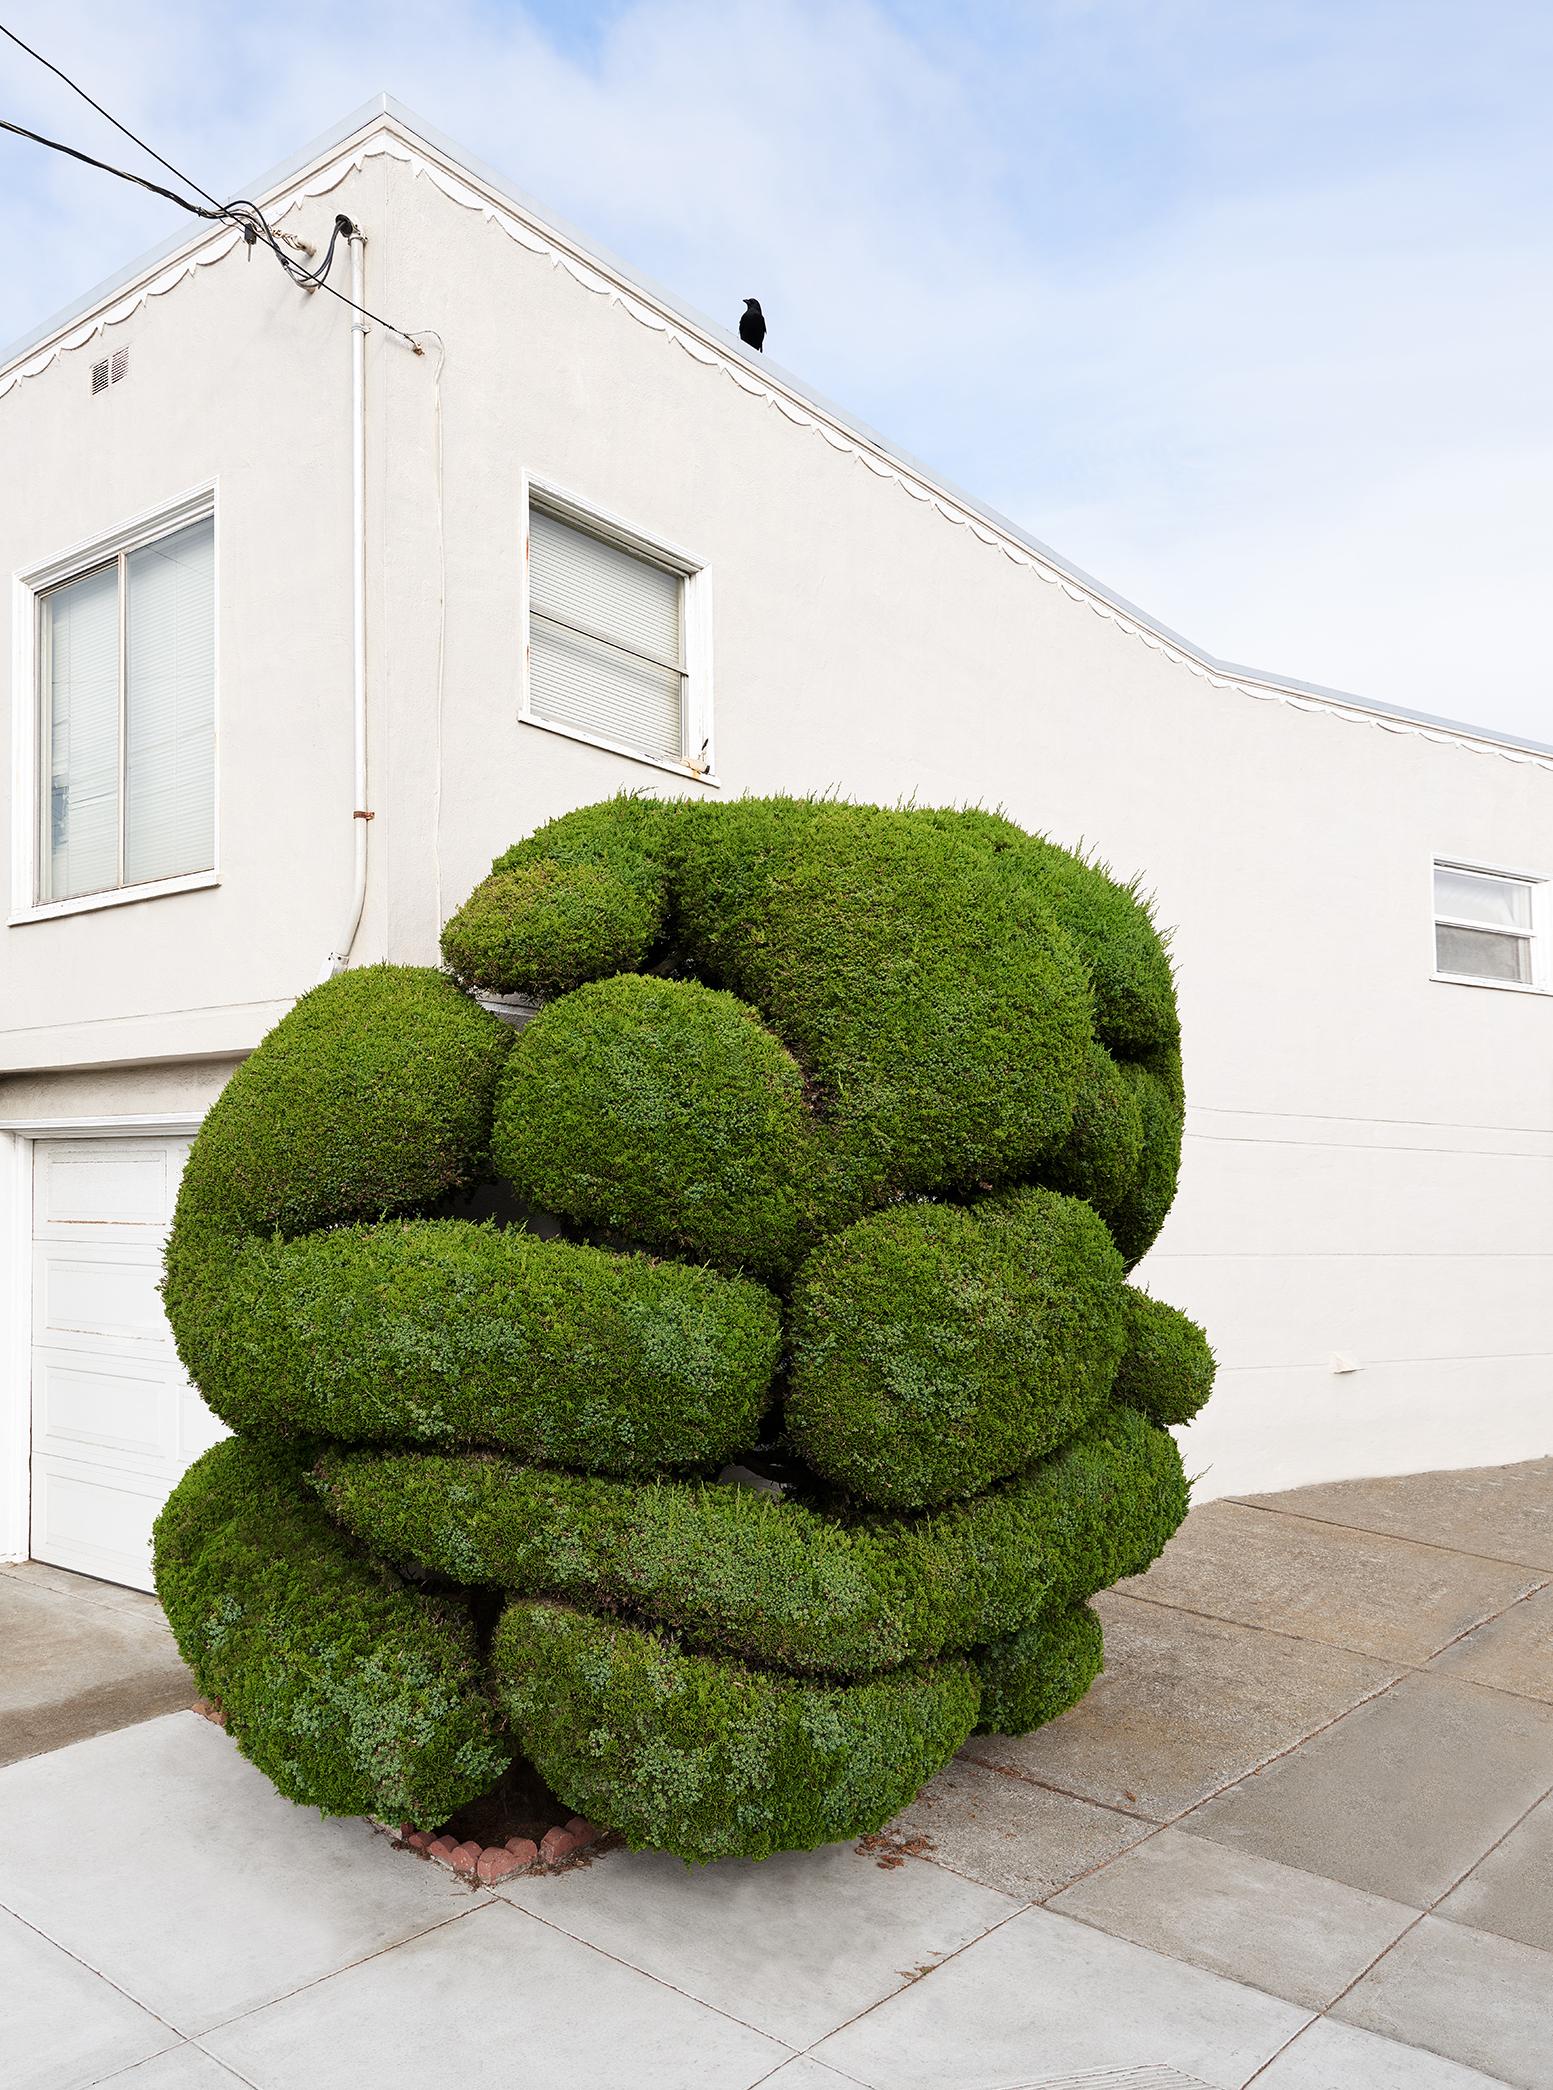 Frank Schott Landscape Print – Topiary V – Großformatfotografie eines ornamental geformten Baumes